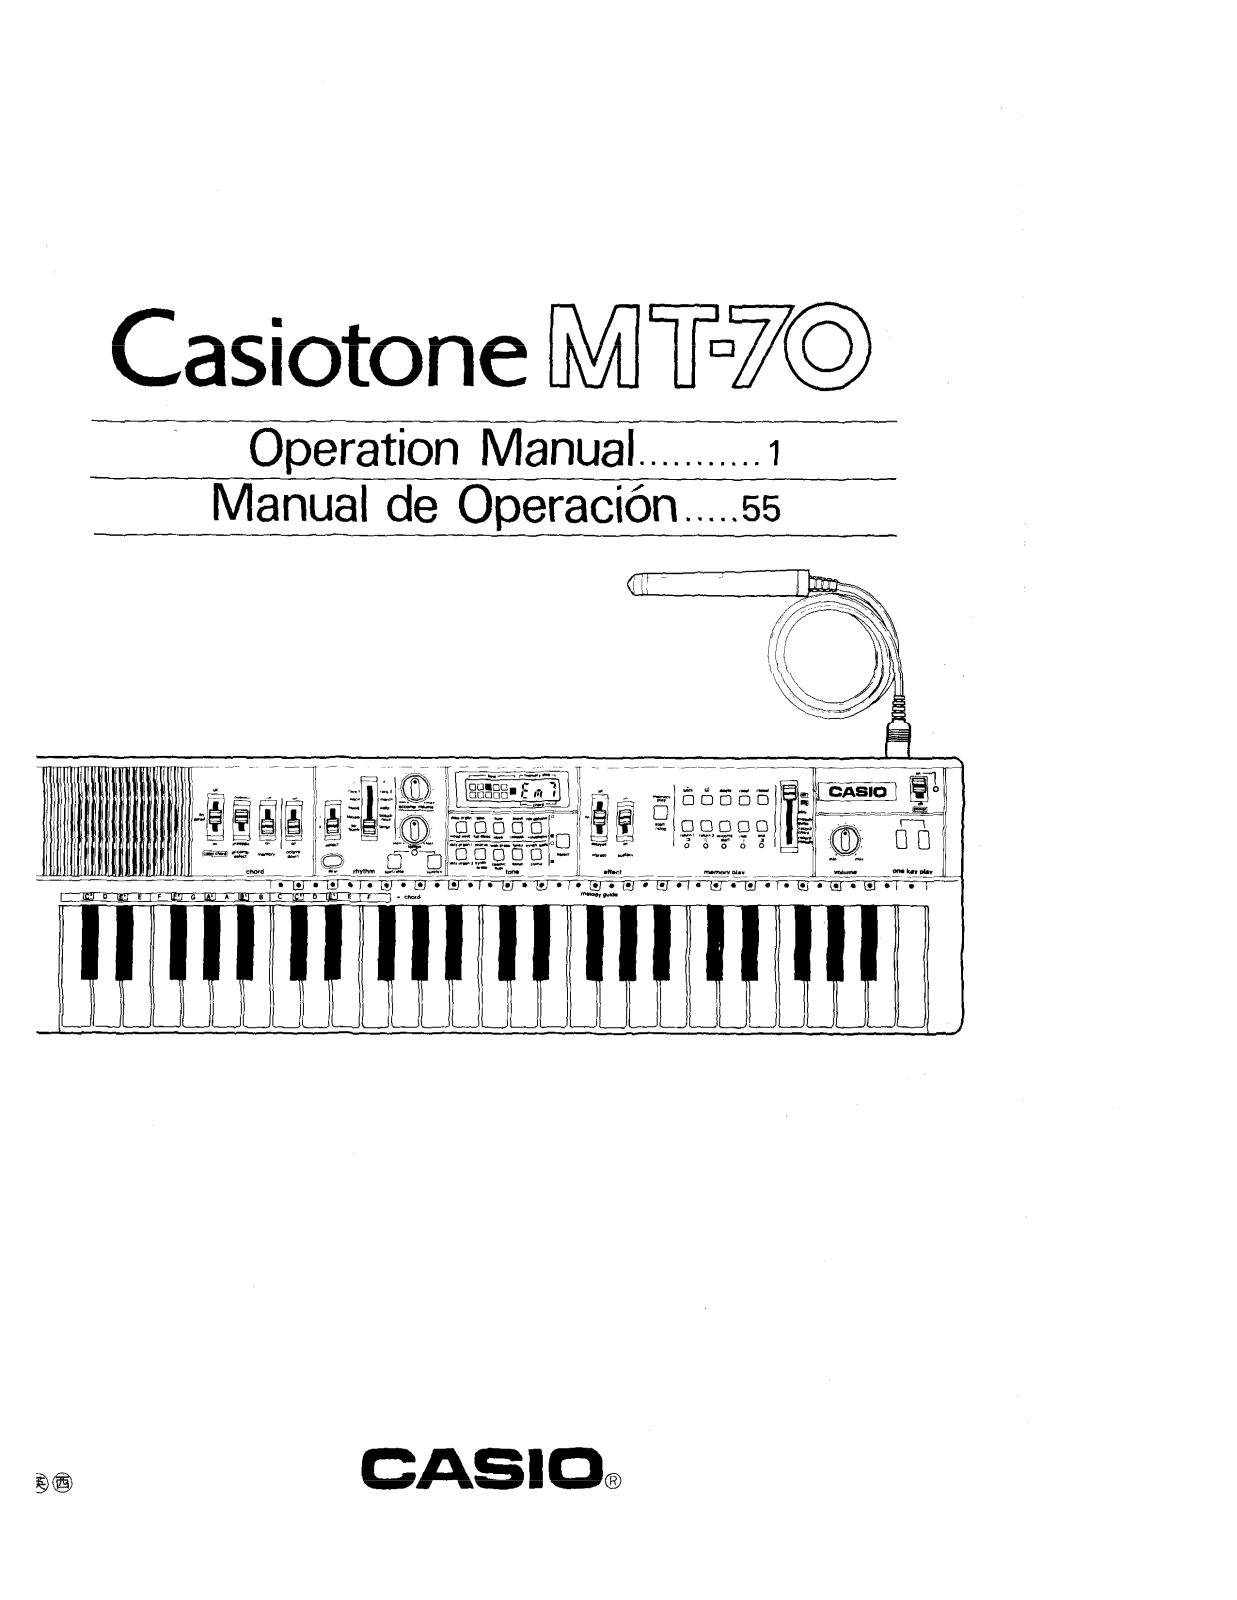 Casio MT-70 User Manual